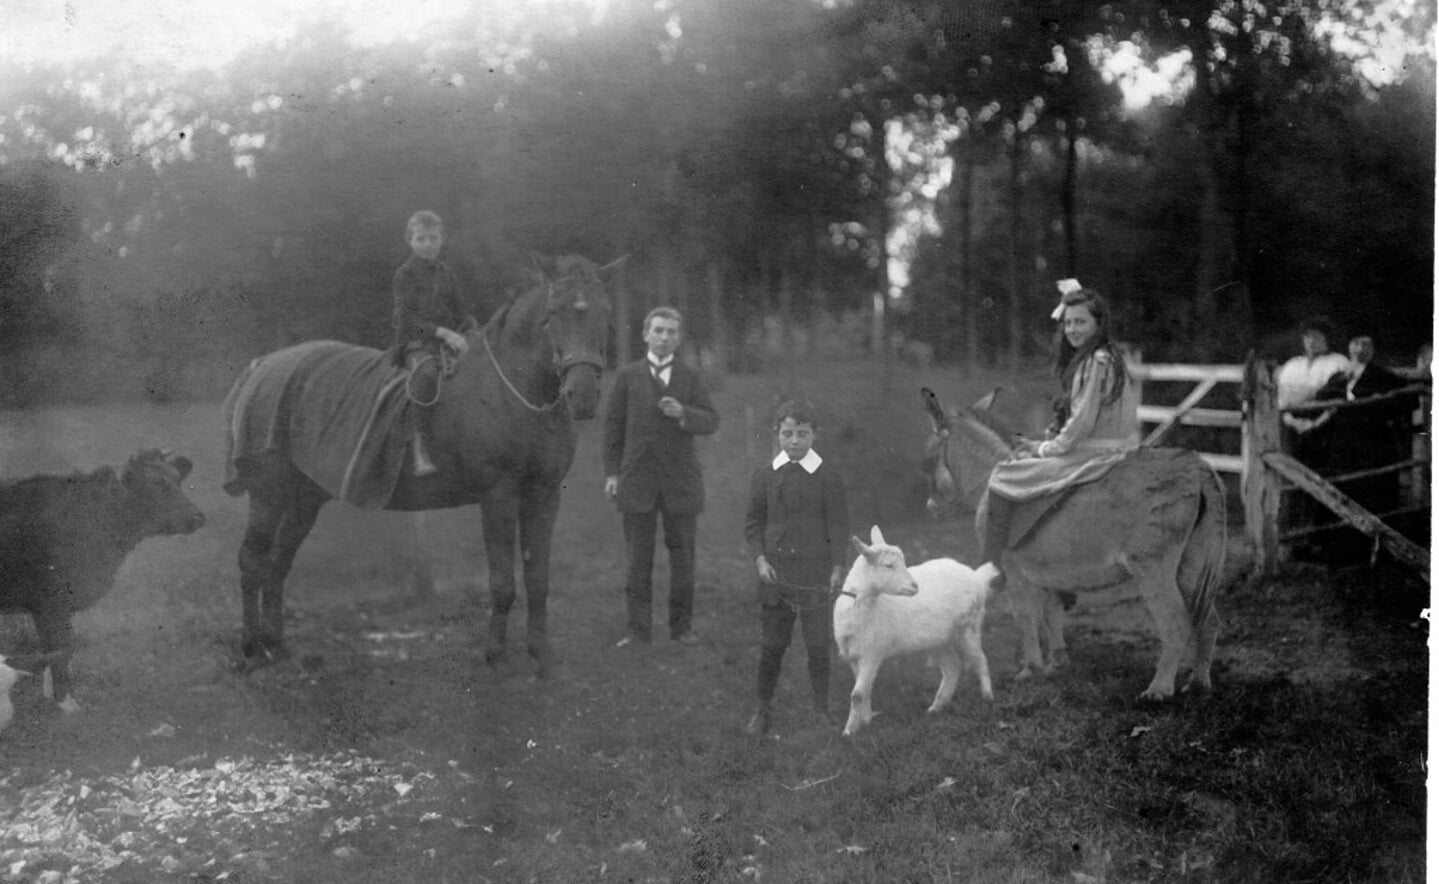 De drie kinderen van Marie-Eugénie de Locht-Mahie…..Charles (op paard links), Marius (bij bokje) en Jeanne (op paard rechts)…..waarschijnlijk met hun vader Louis de Locht.